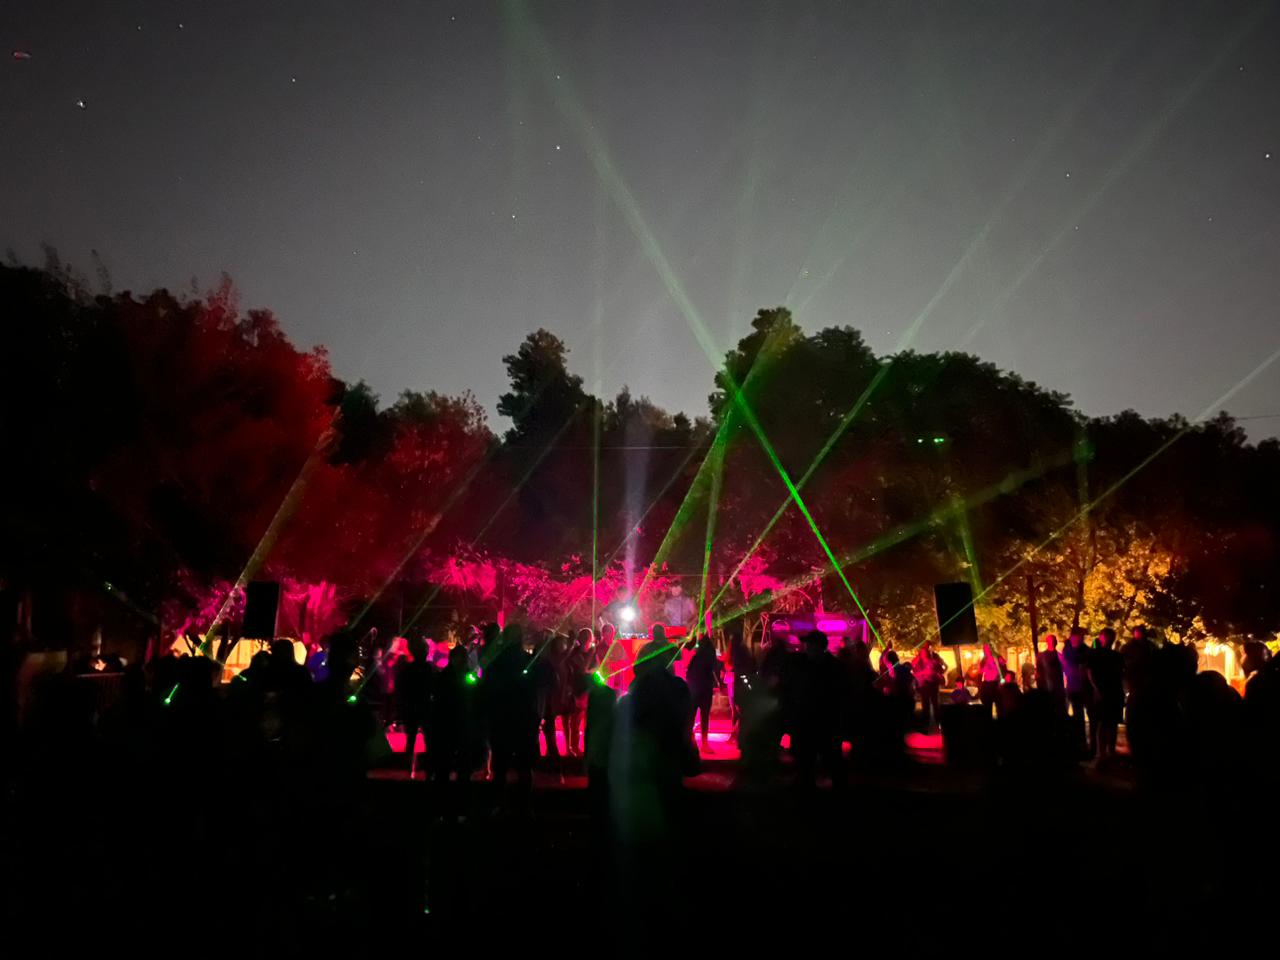 CALLE LARGA: Más de 150 láser astronómicos iluminaron el cielo de Calle Larga en celebración del Día de la Astronomía